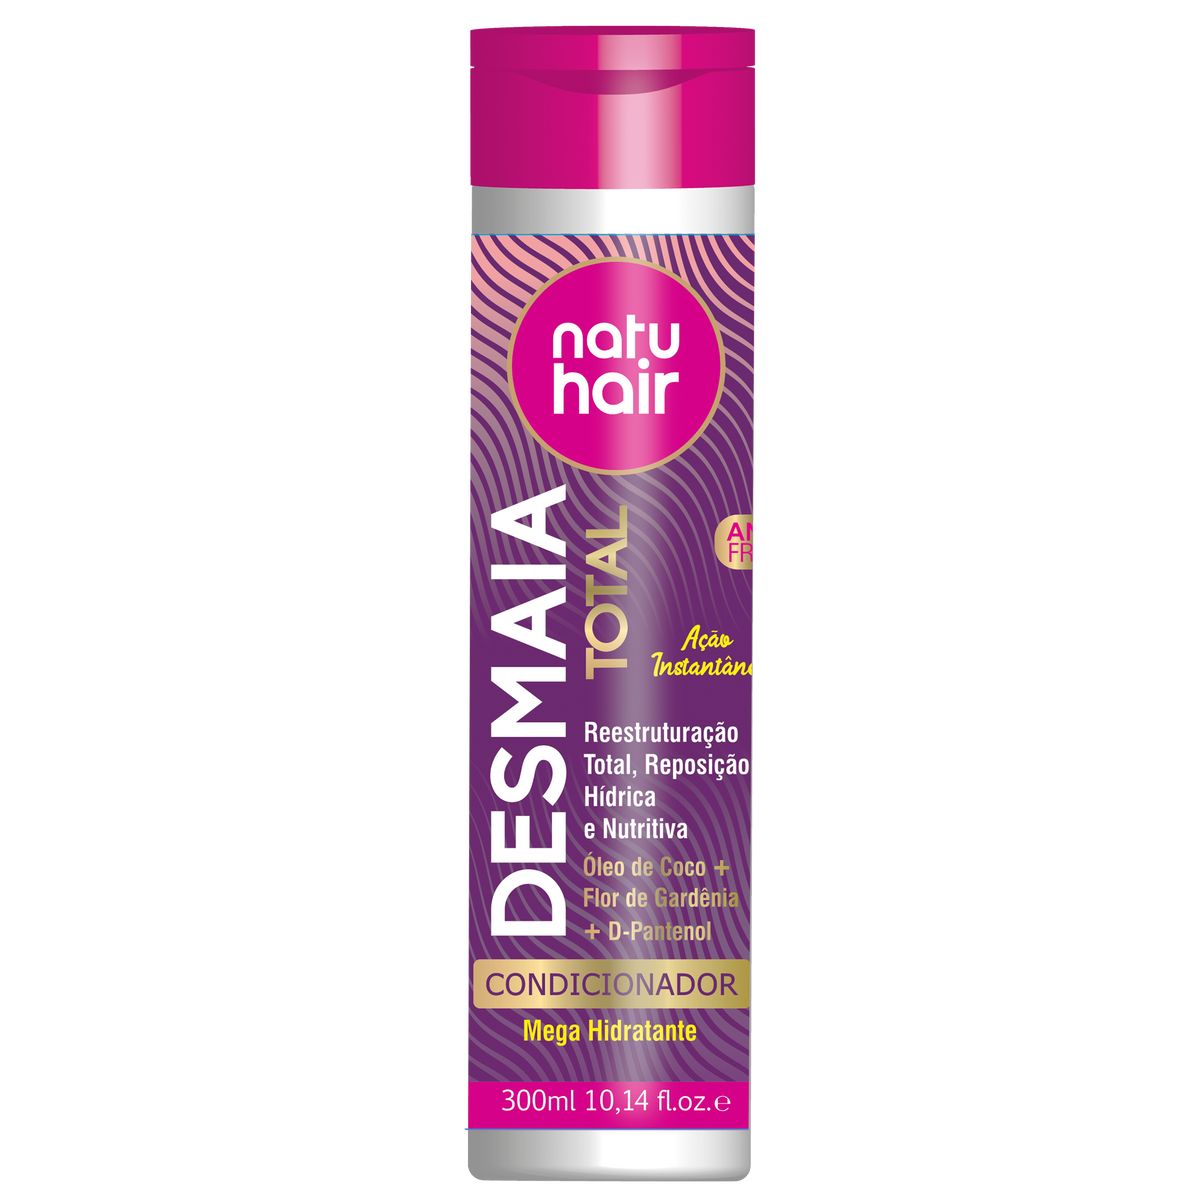 Condicionador Natu Hair Desmaia Total 300ml